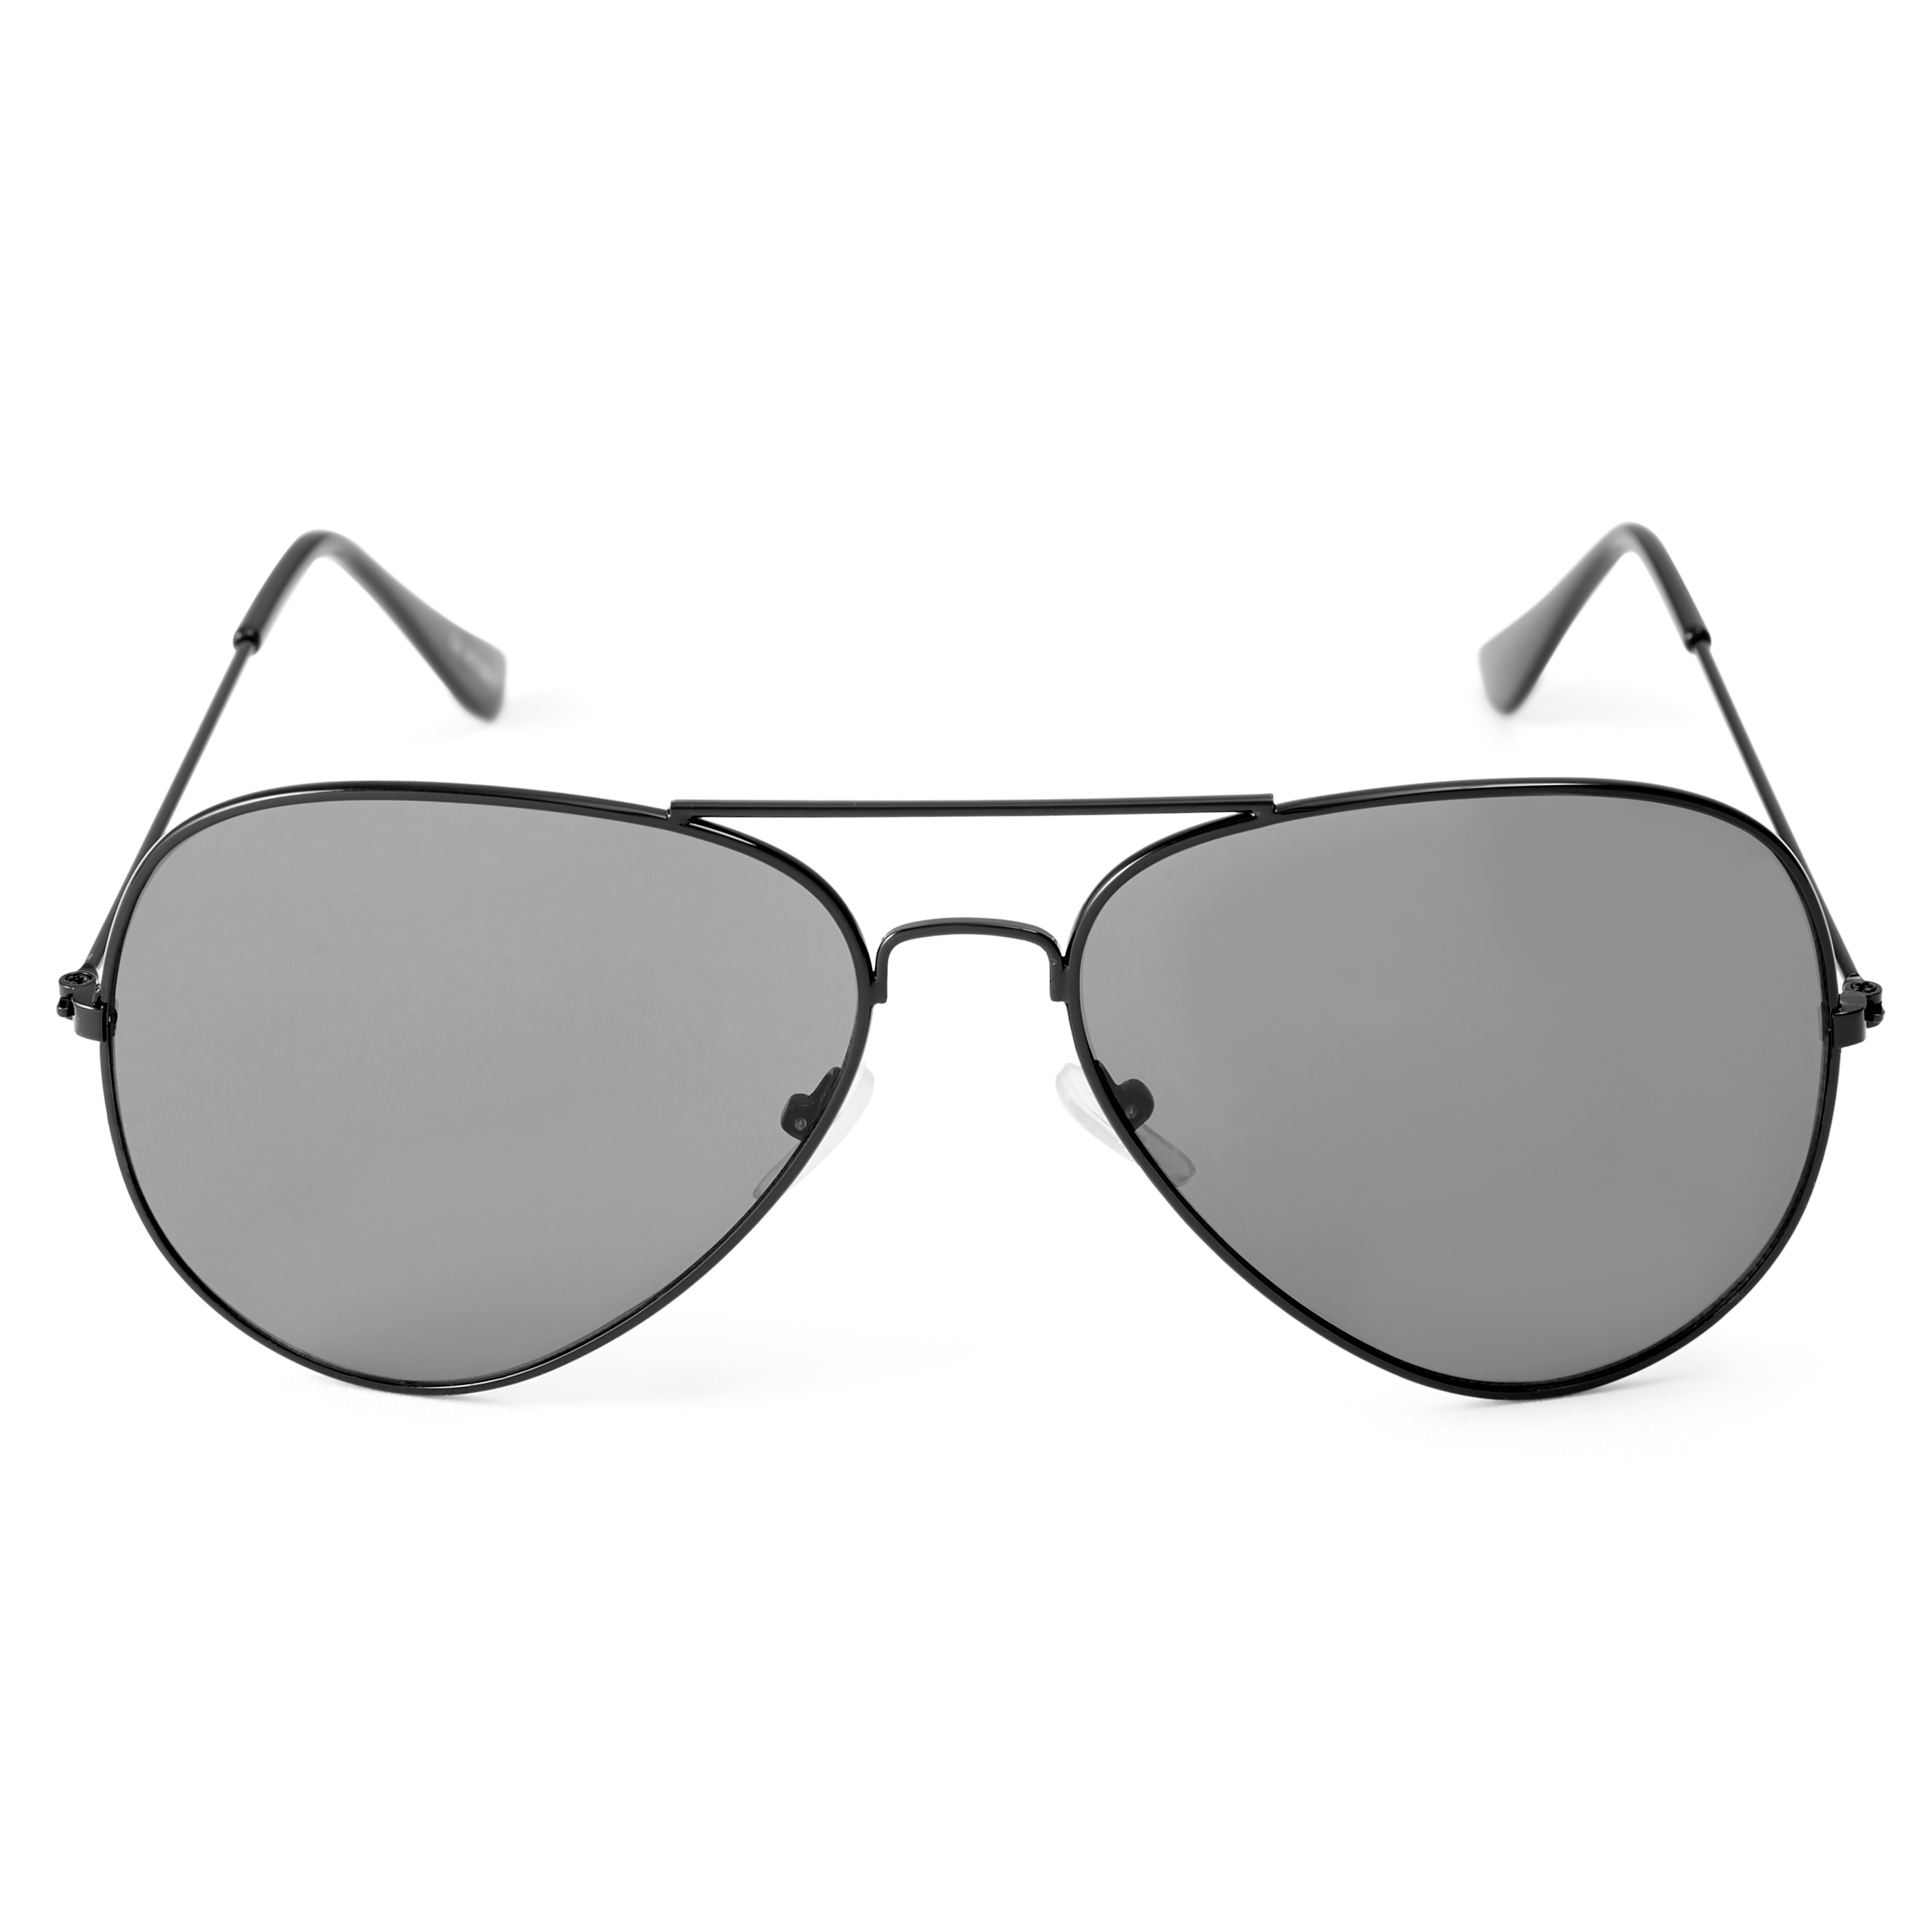 Couleur gris noir lunettes De soleil aviateur en métal pour